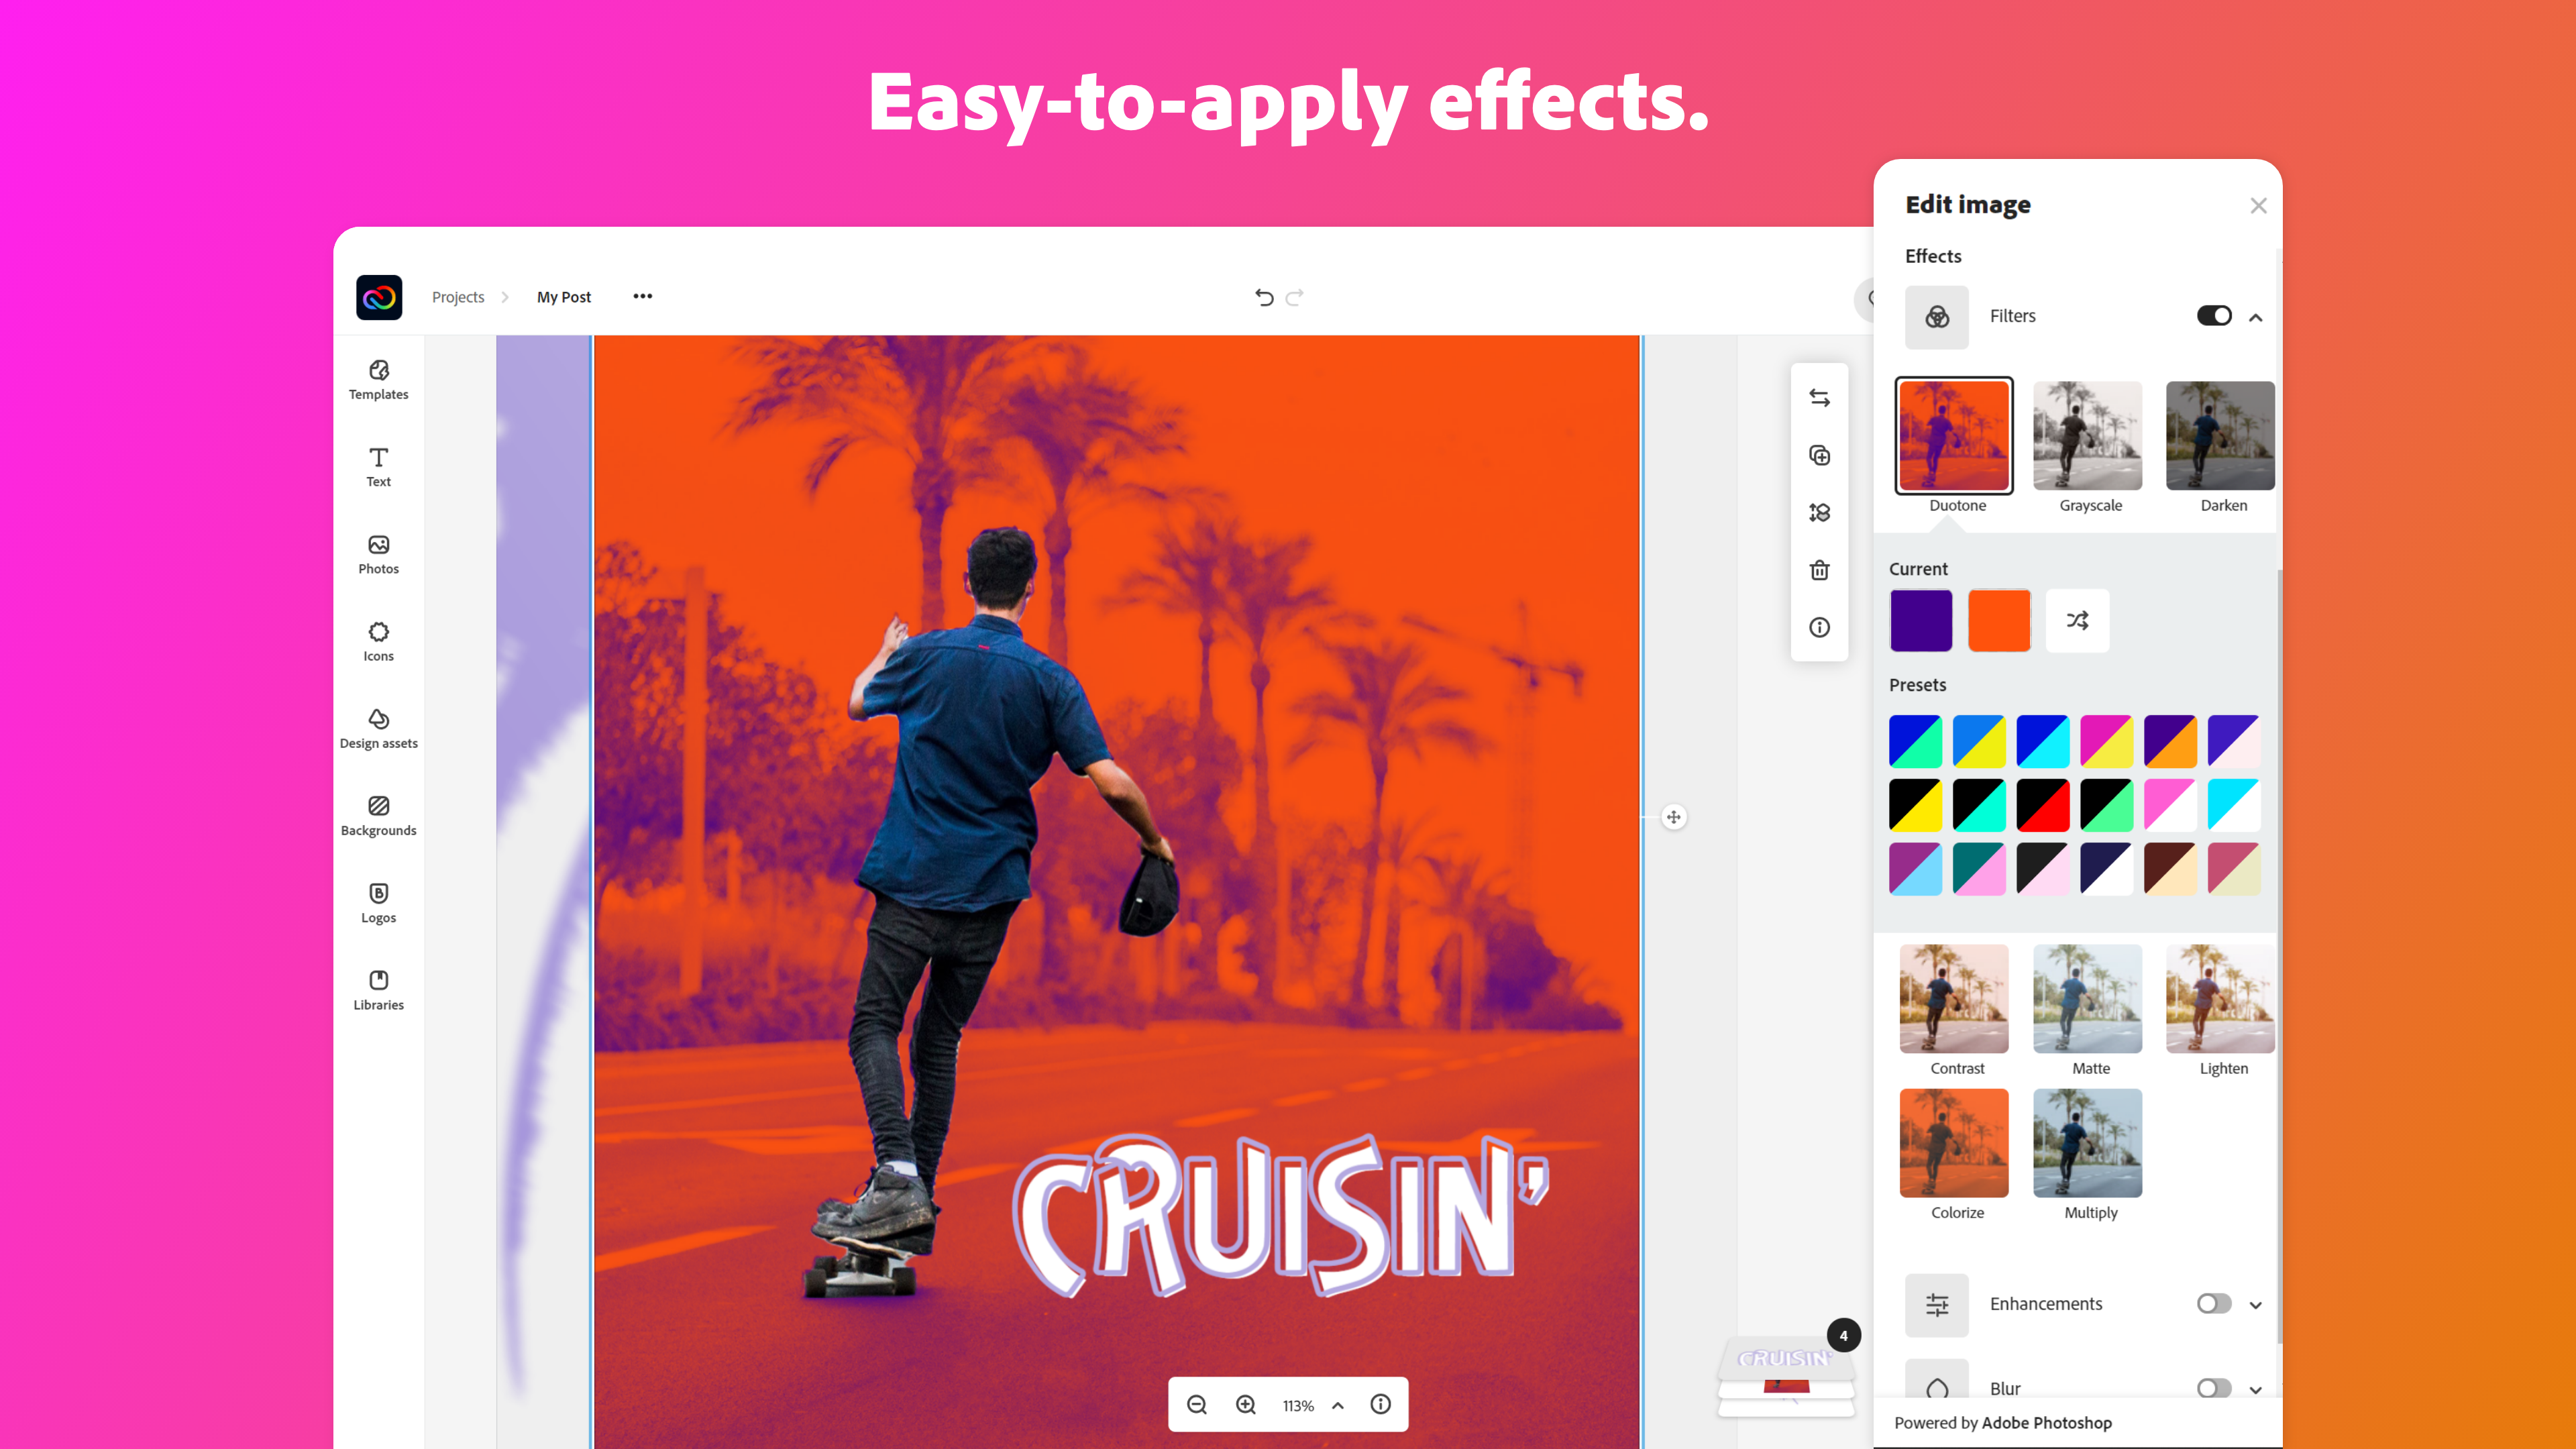 Adobe Creative Cloud Express Software cung cấp cho người dùng các công cụ chỉnh sửa hình ảnh đầy đủ và chuyên nghiệp. Tạo ra những thiết kế đẹp mắt và chuyên nghiệp chỉ trong vài cú nhấp chuột.